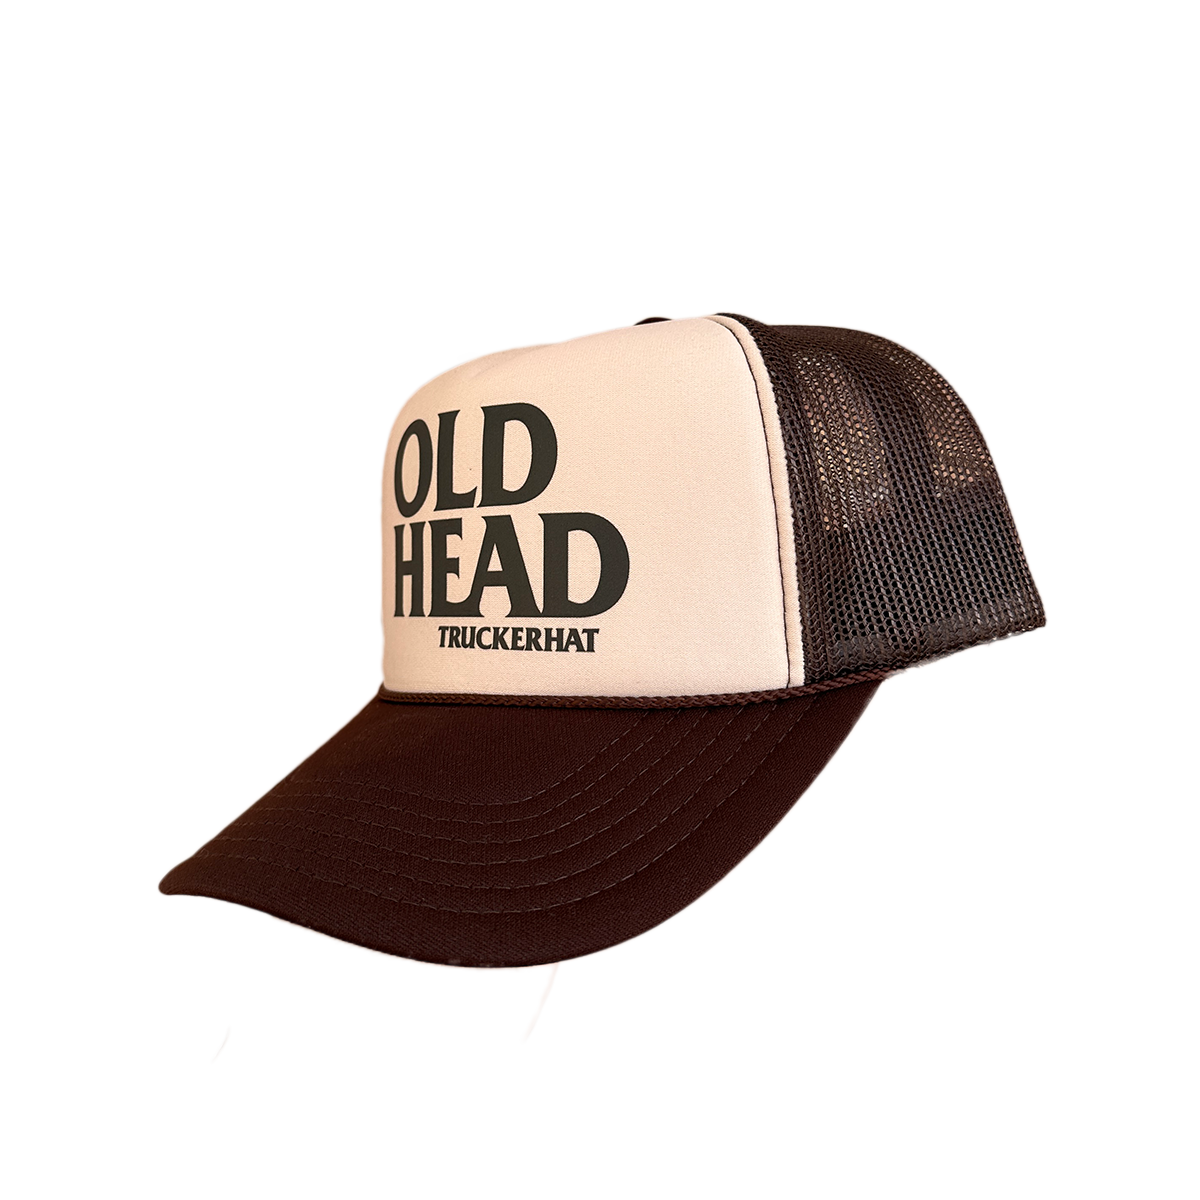 Mud Old Head Trucker Hat - Brown/Tan